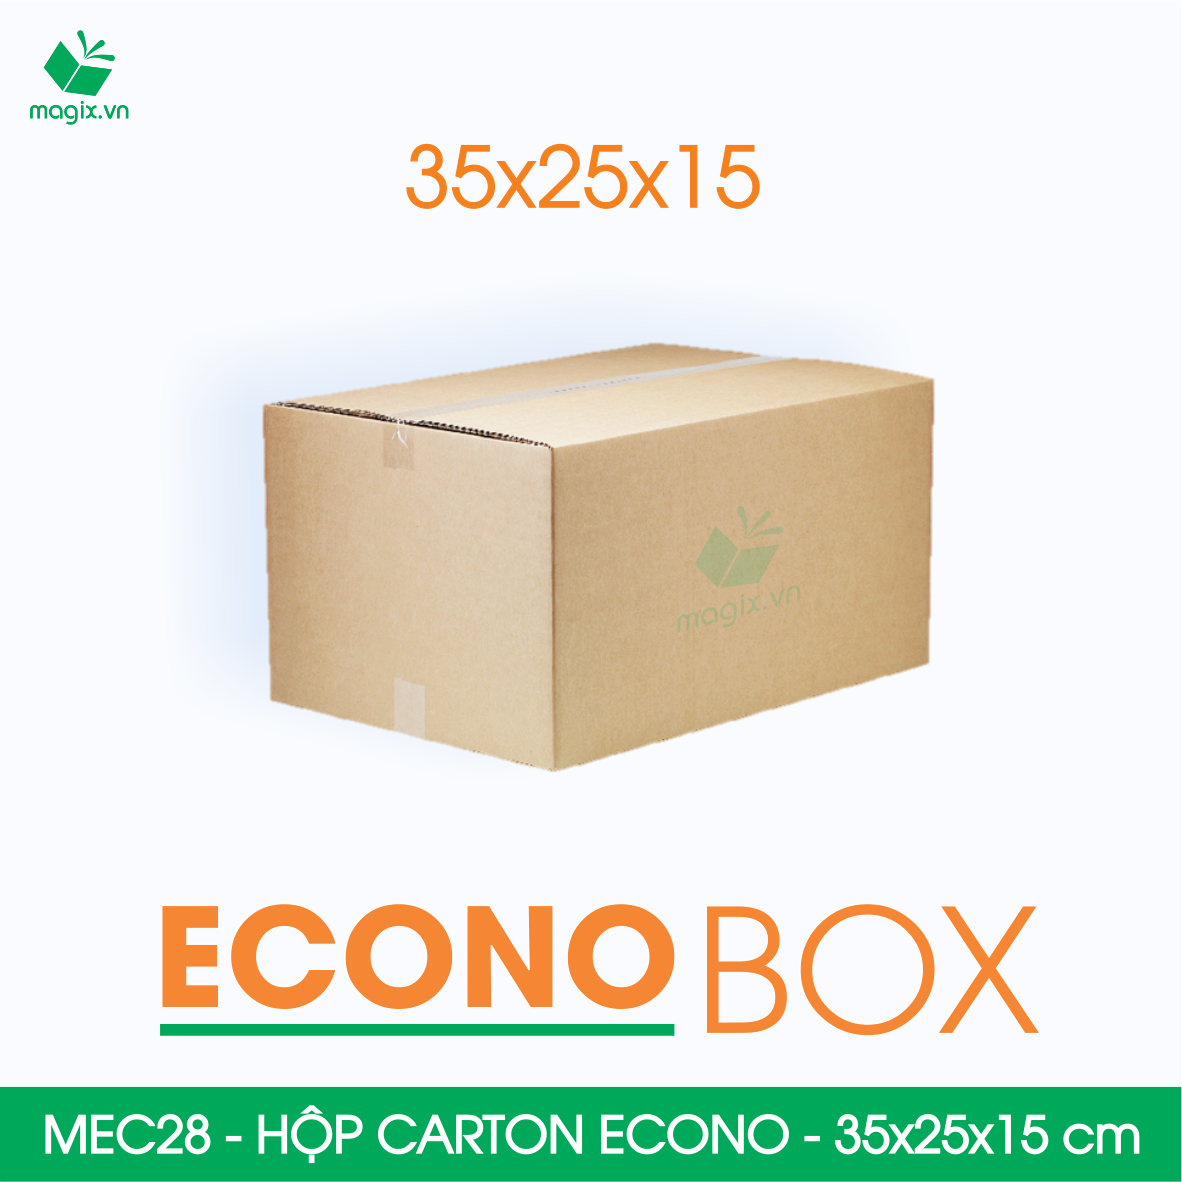 Hình ảnh MEC28 - 35x25x15 cm - Combo 60 thùng hộp carton trơn siêu tiết kiệm ECONO